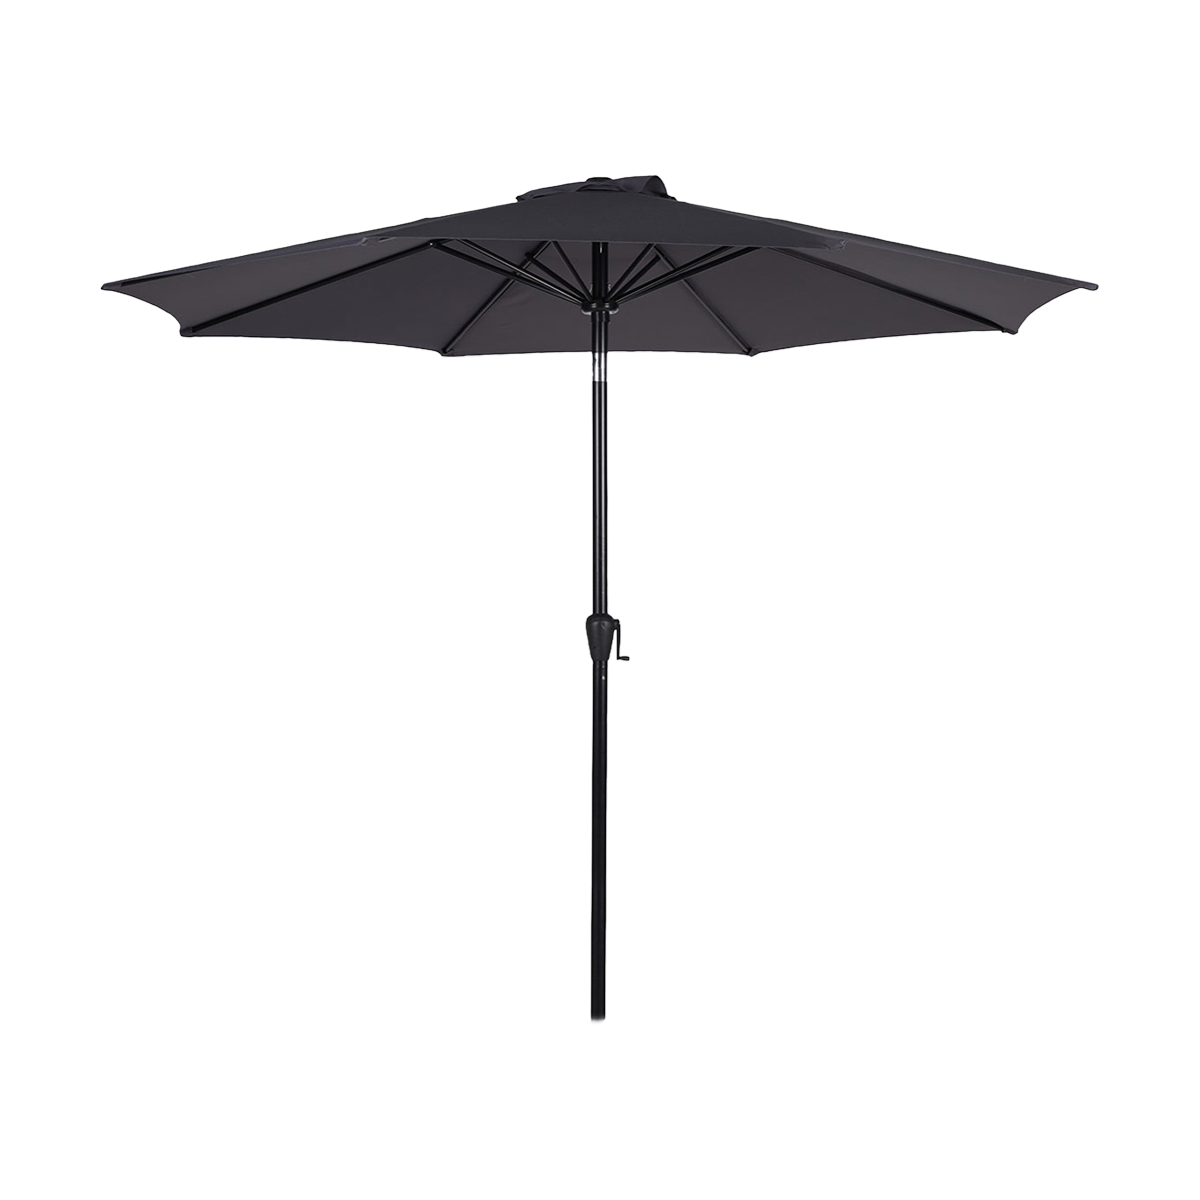 omhelzing geschenk Deens Jairo verstelbare parasol donkergrijs - Ø 3 meter | Gewoonstijl